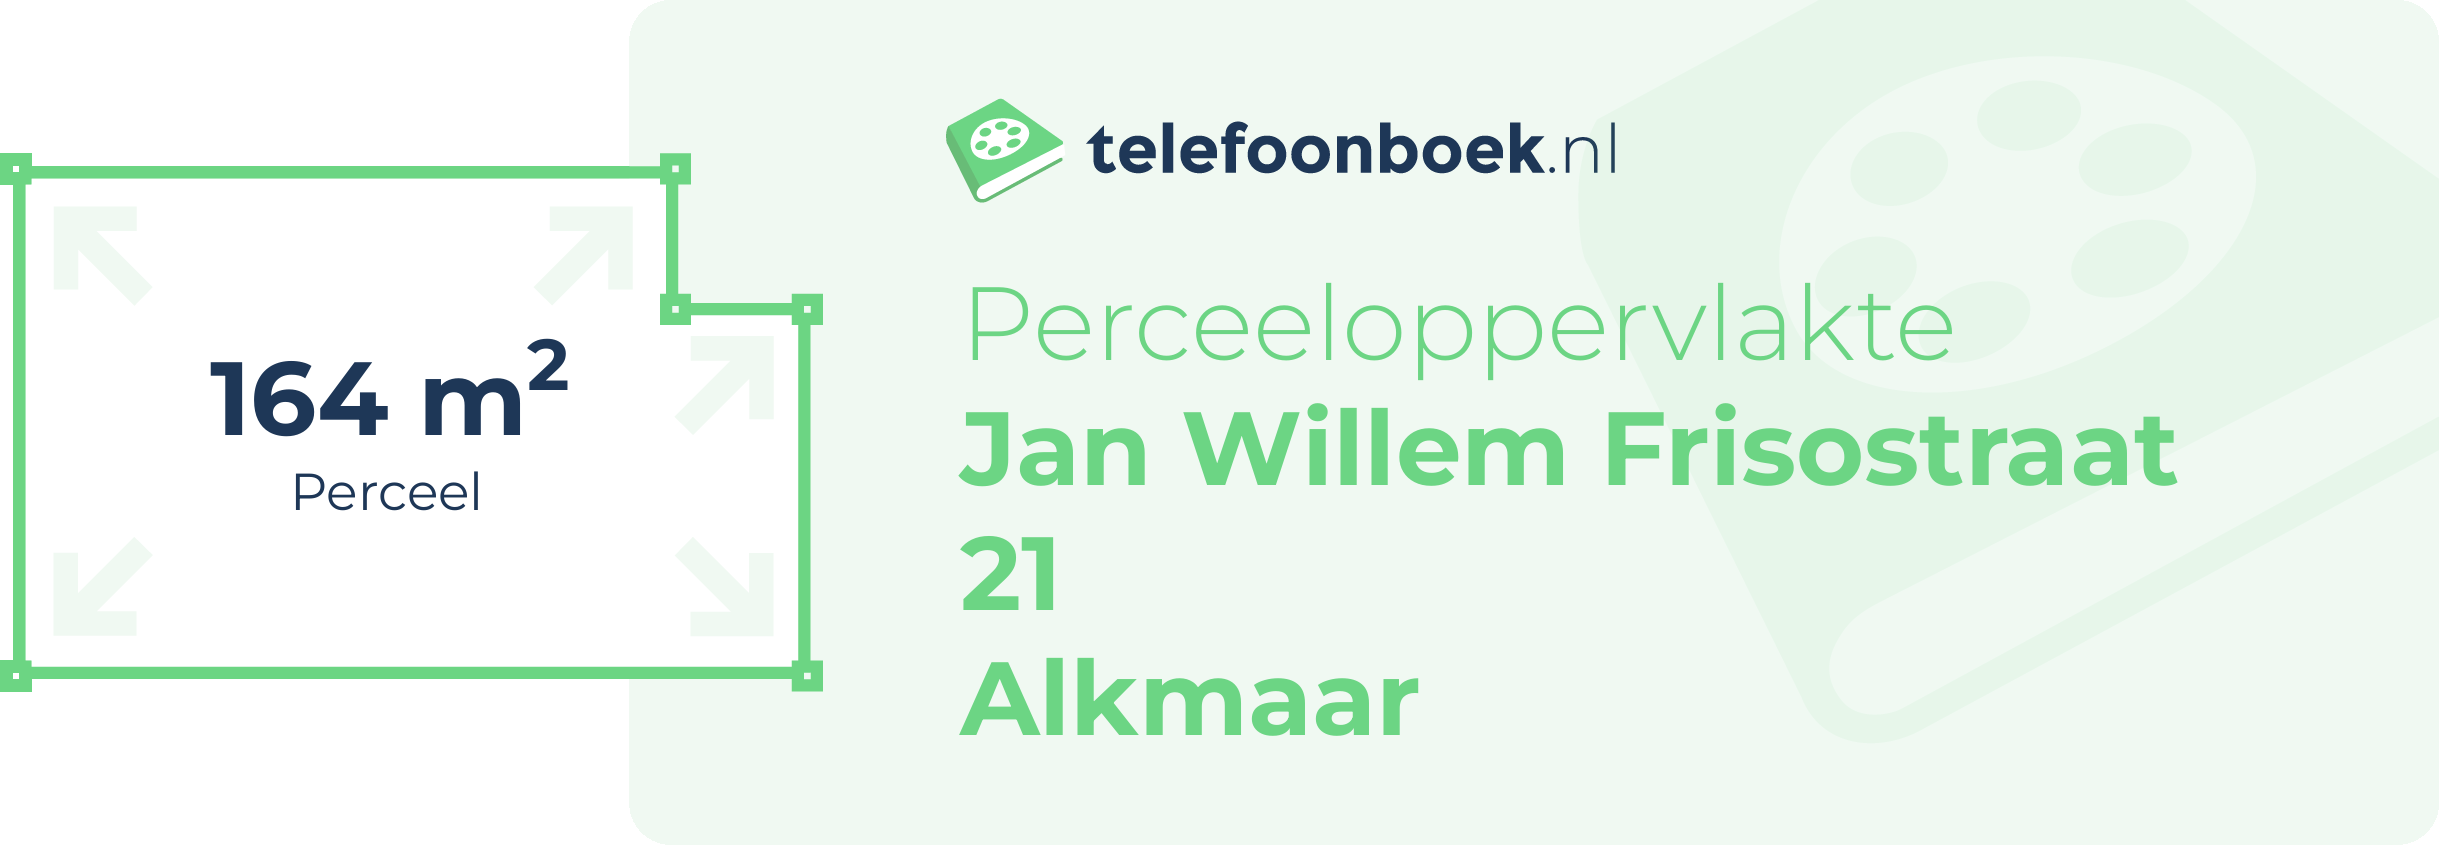 Perceeloppervlakte Jan Willem Frisostraat 21 Alkmaar